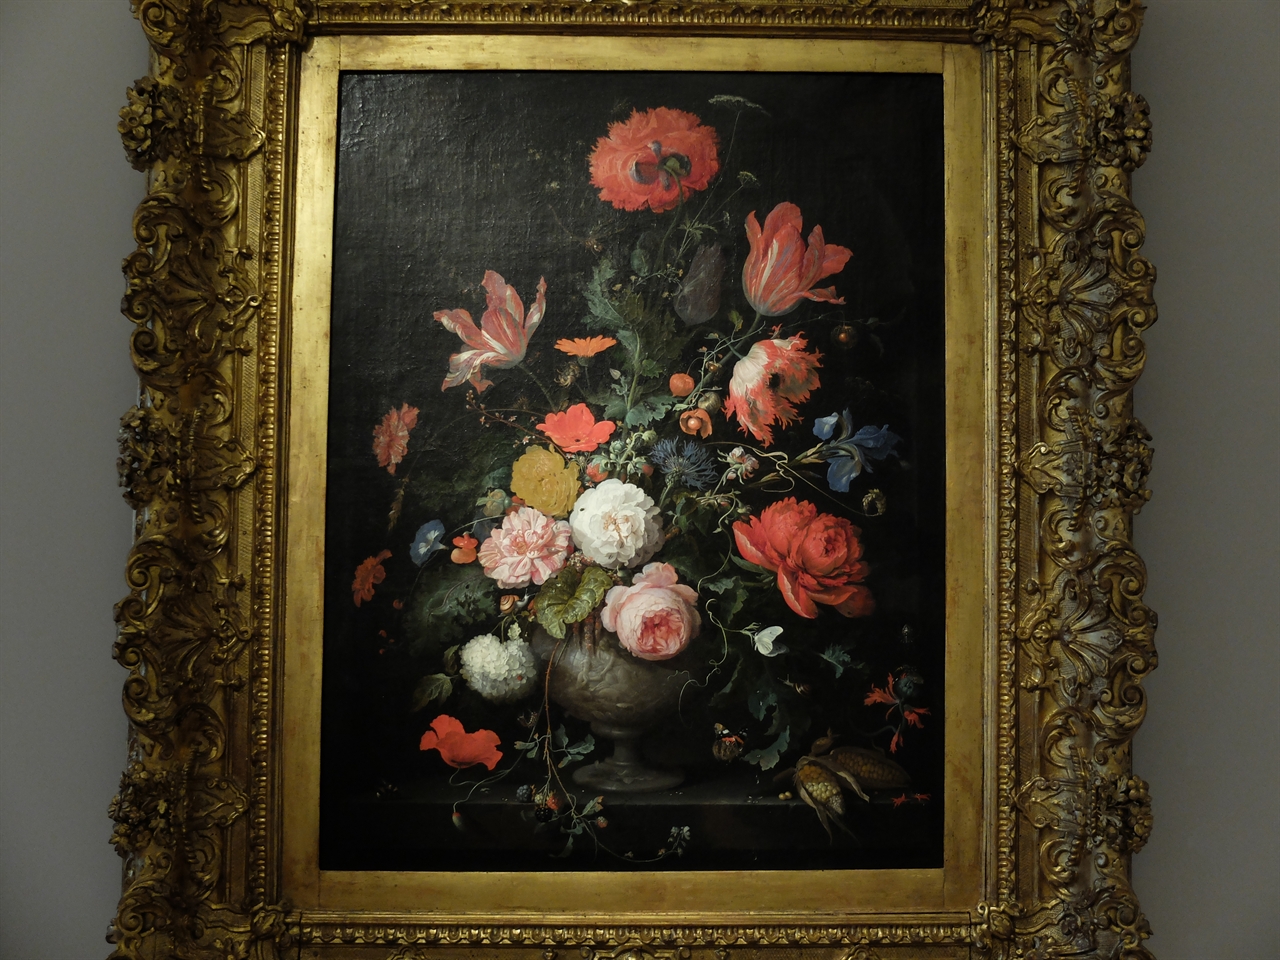 아브라함 미뇽, '꽃의 정물', 토리노 사바우다 미술관. 풍성하고 화려한 꽃들의 아름다움은 말할 것도 꽃잎 위에 앉은 작은 개미들까지 섬세하게 묘사했습니다.